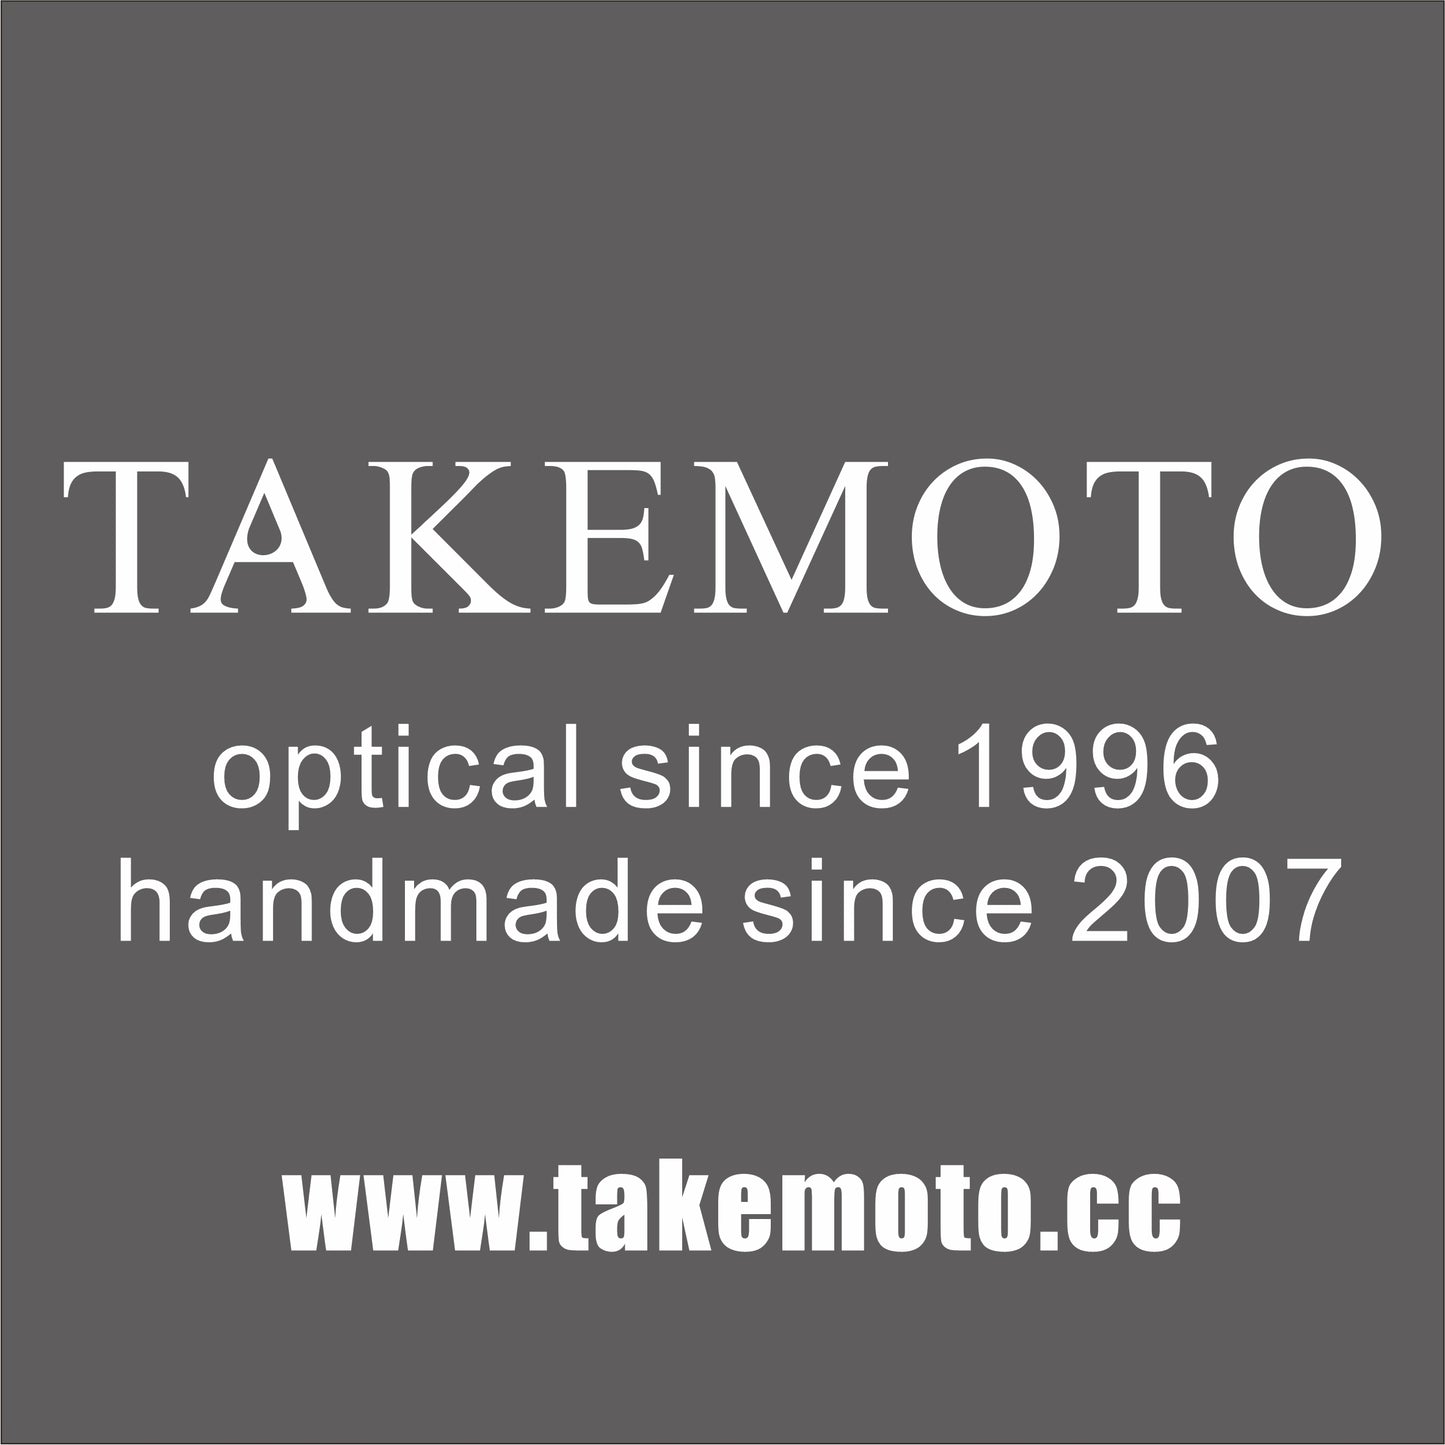 Single Customization of TAKEMOTO